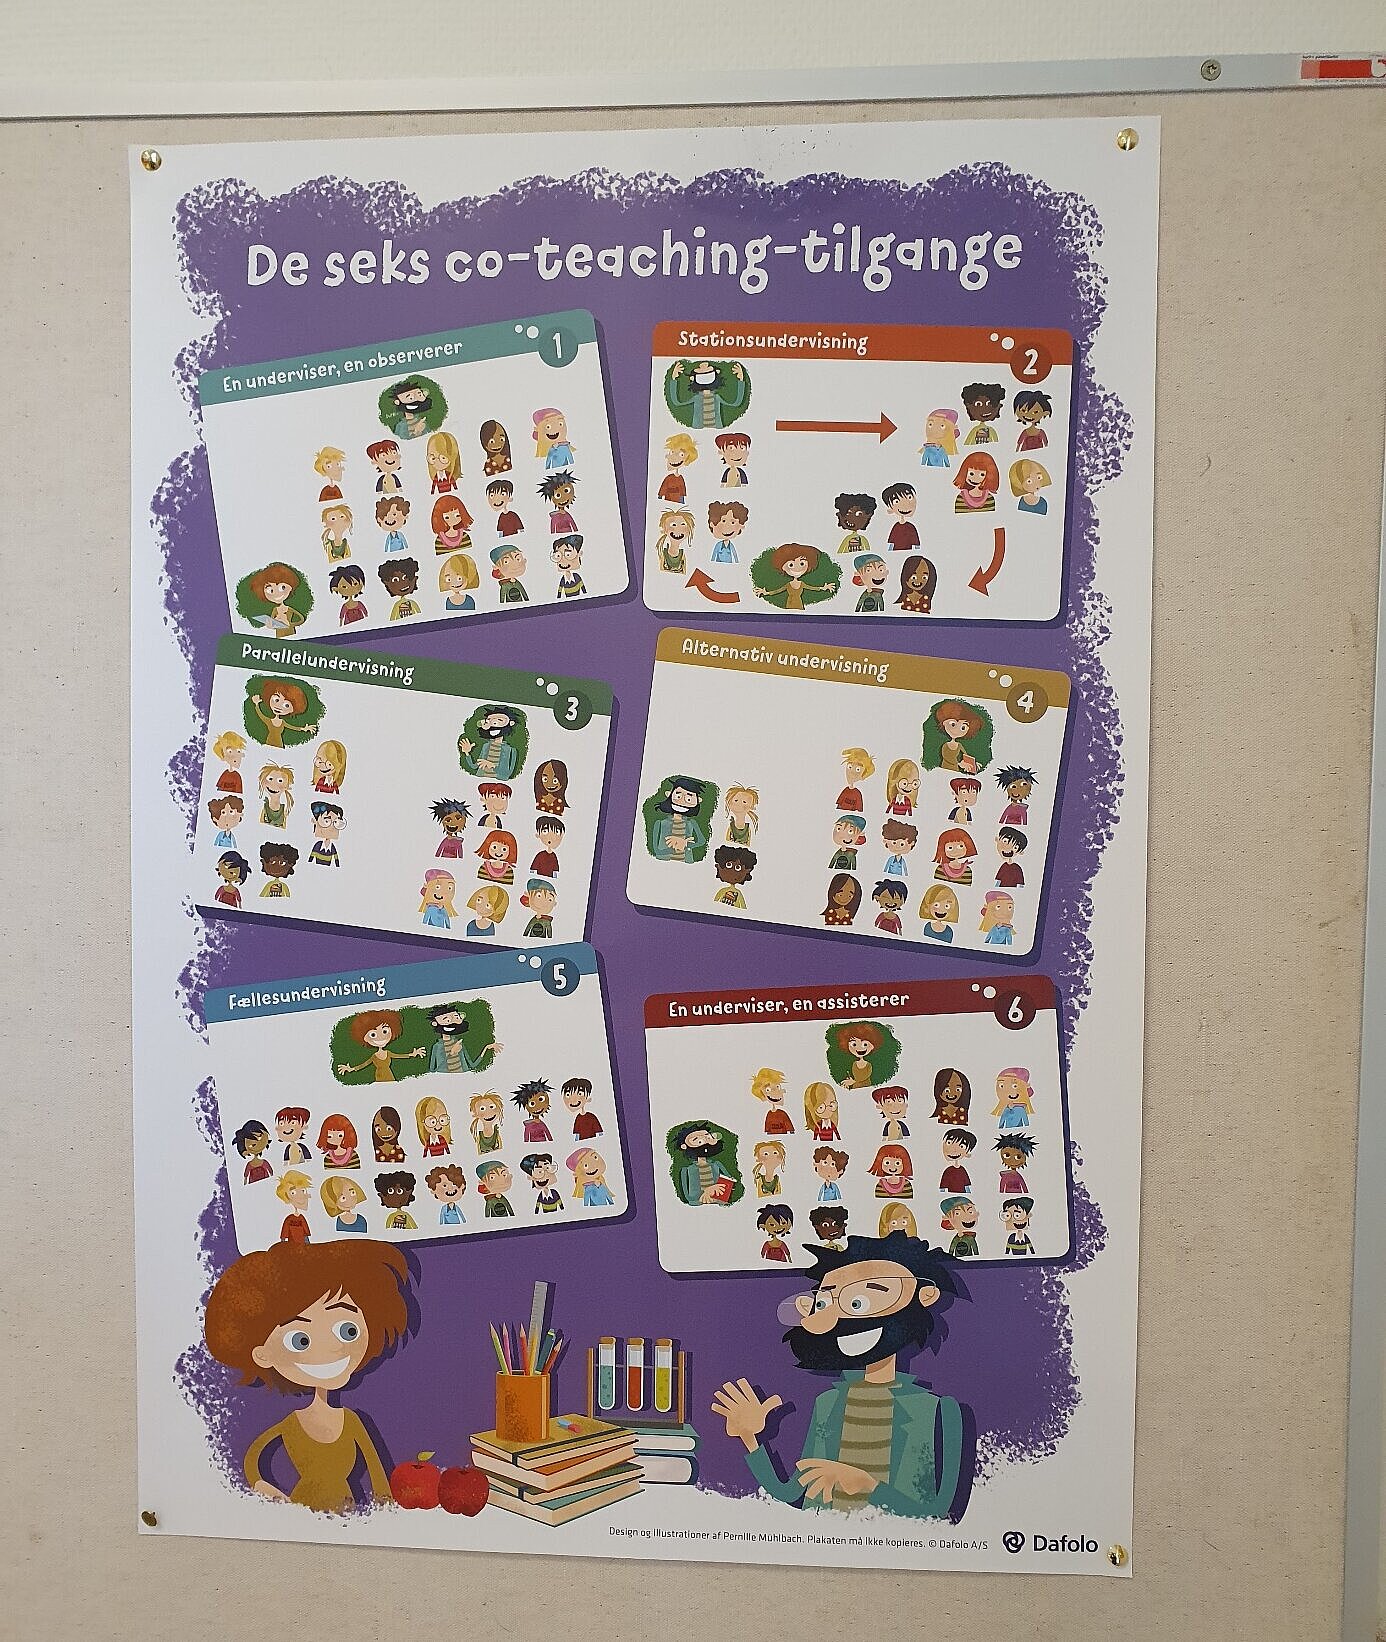 Plakat "Formen von Co-Teaching"